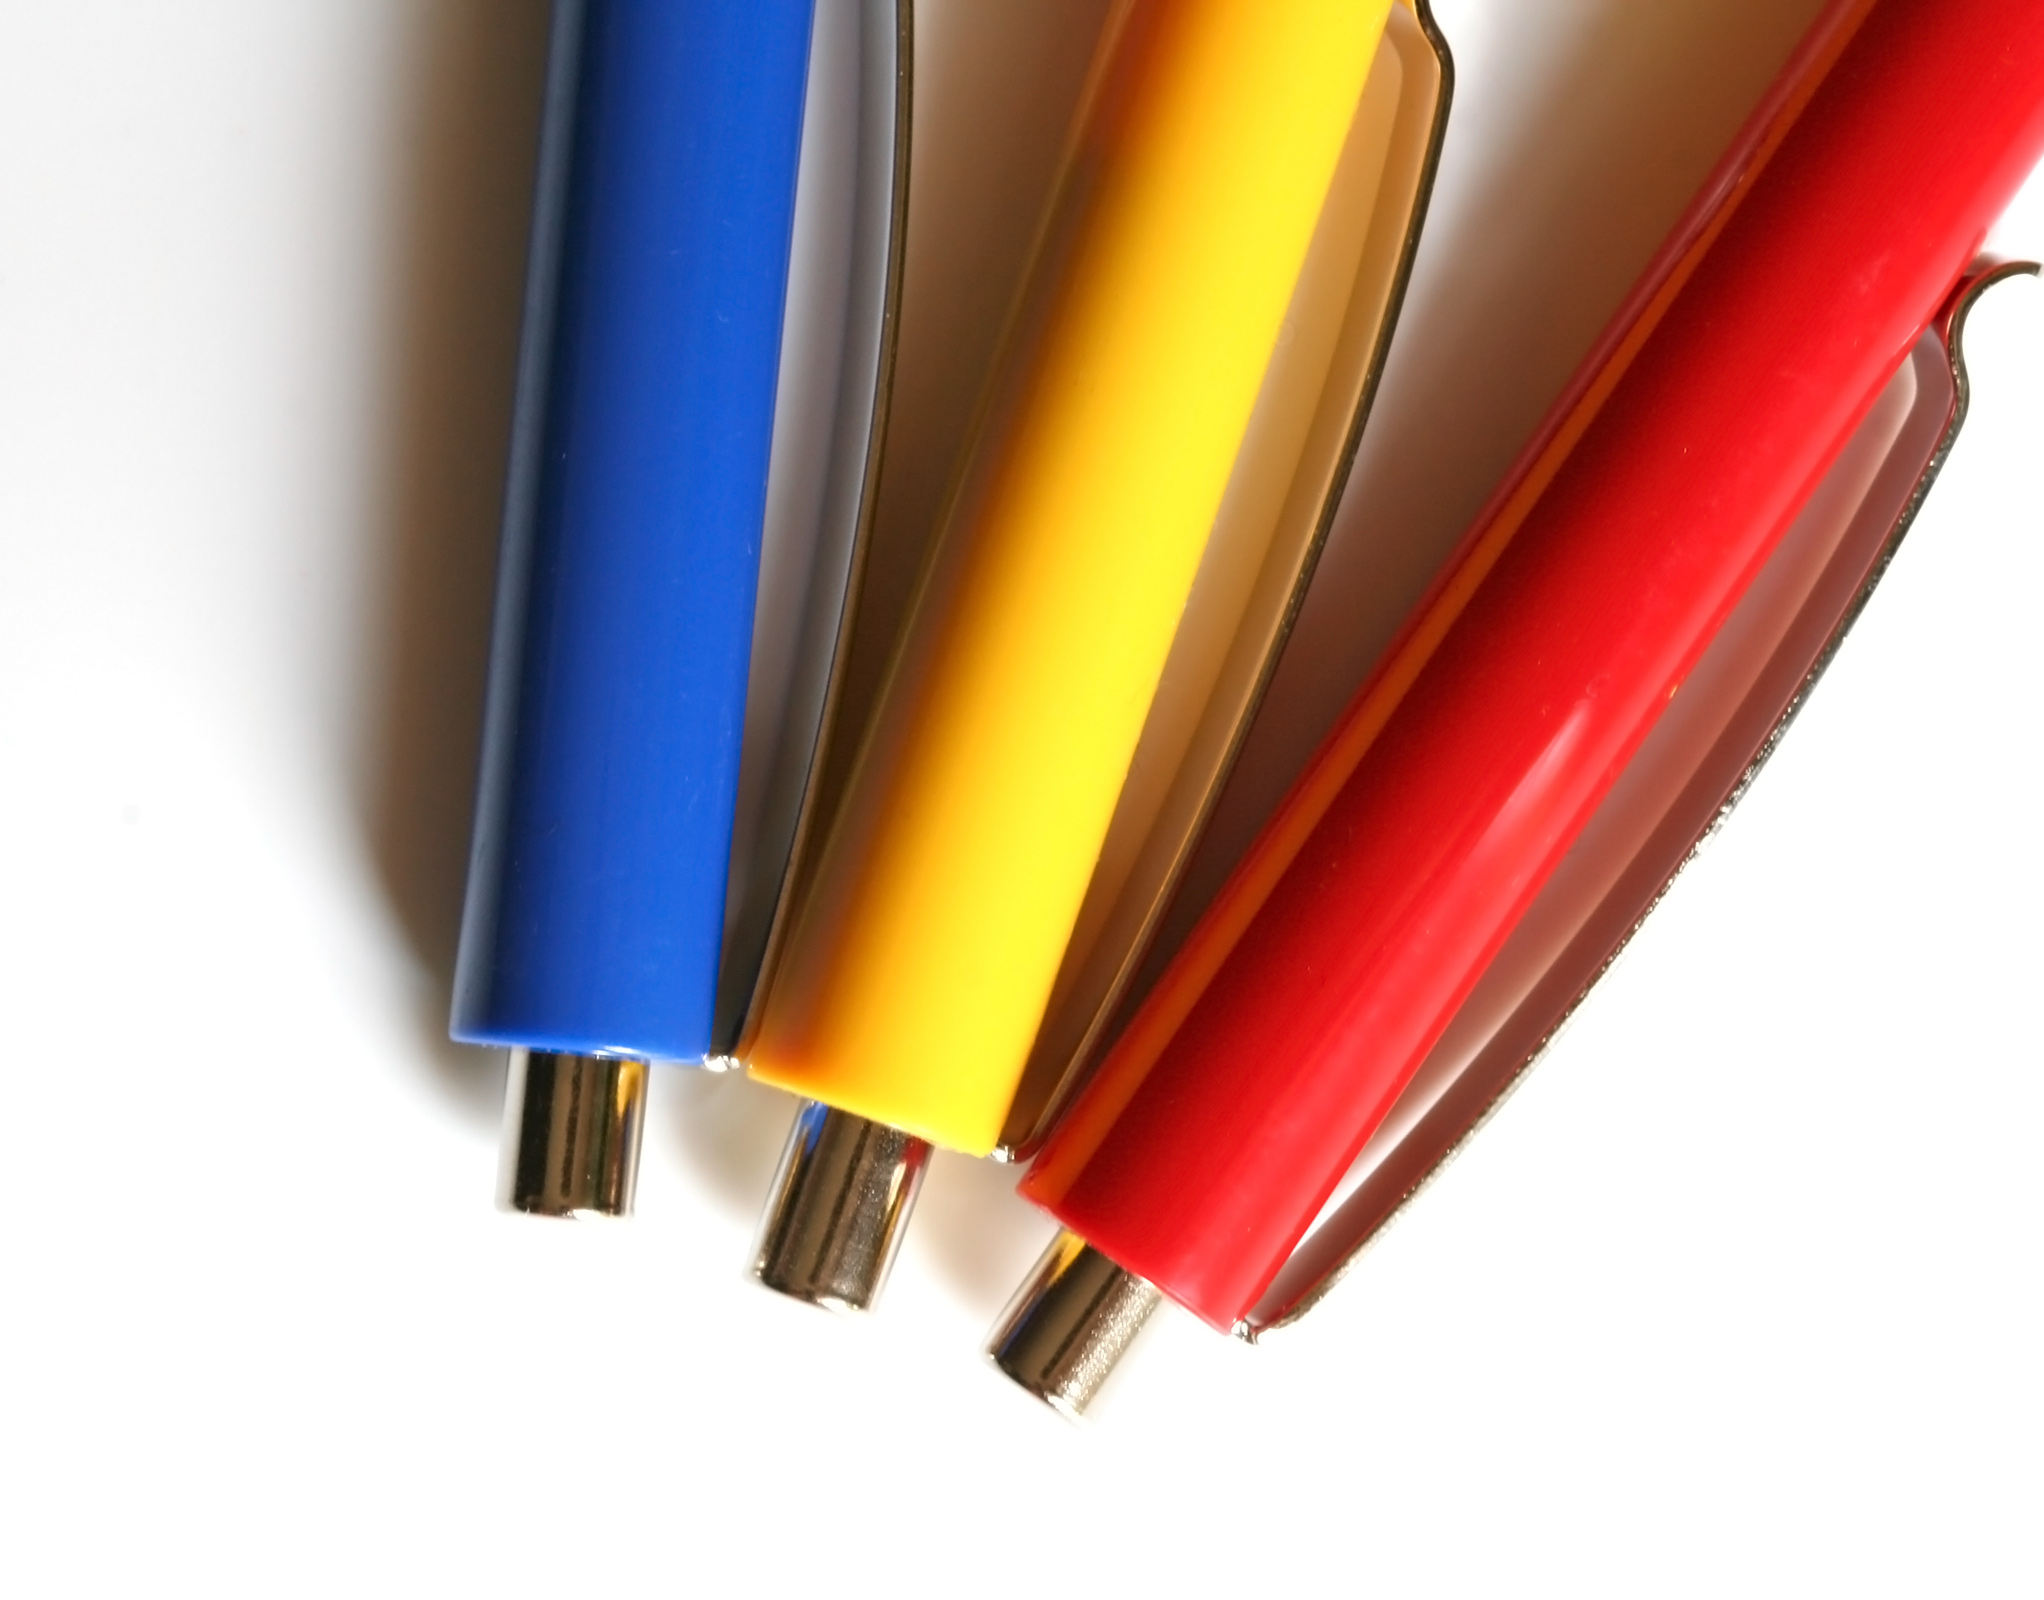 Multi colored pens - stock image